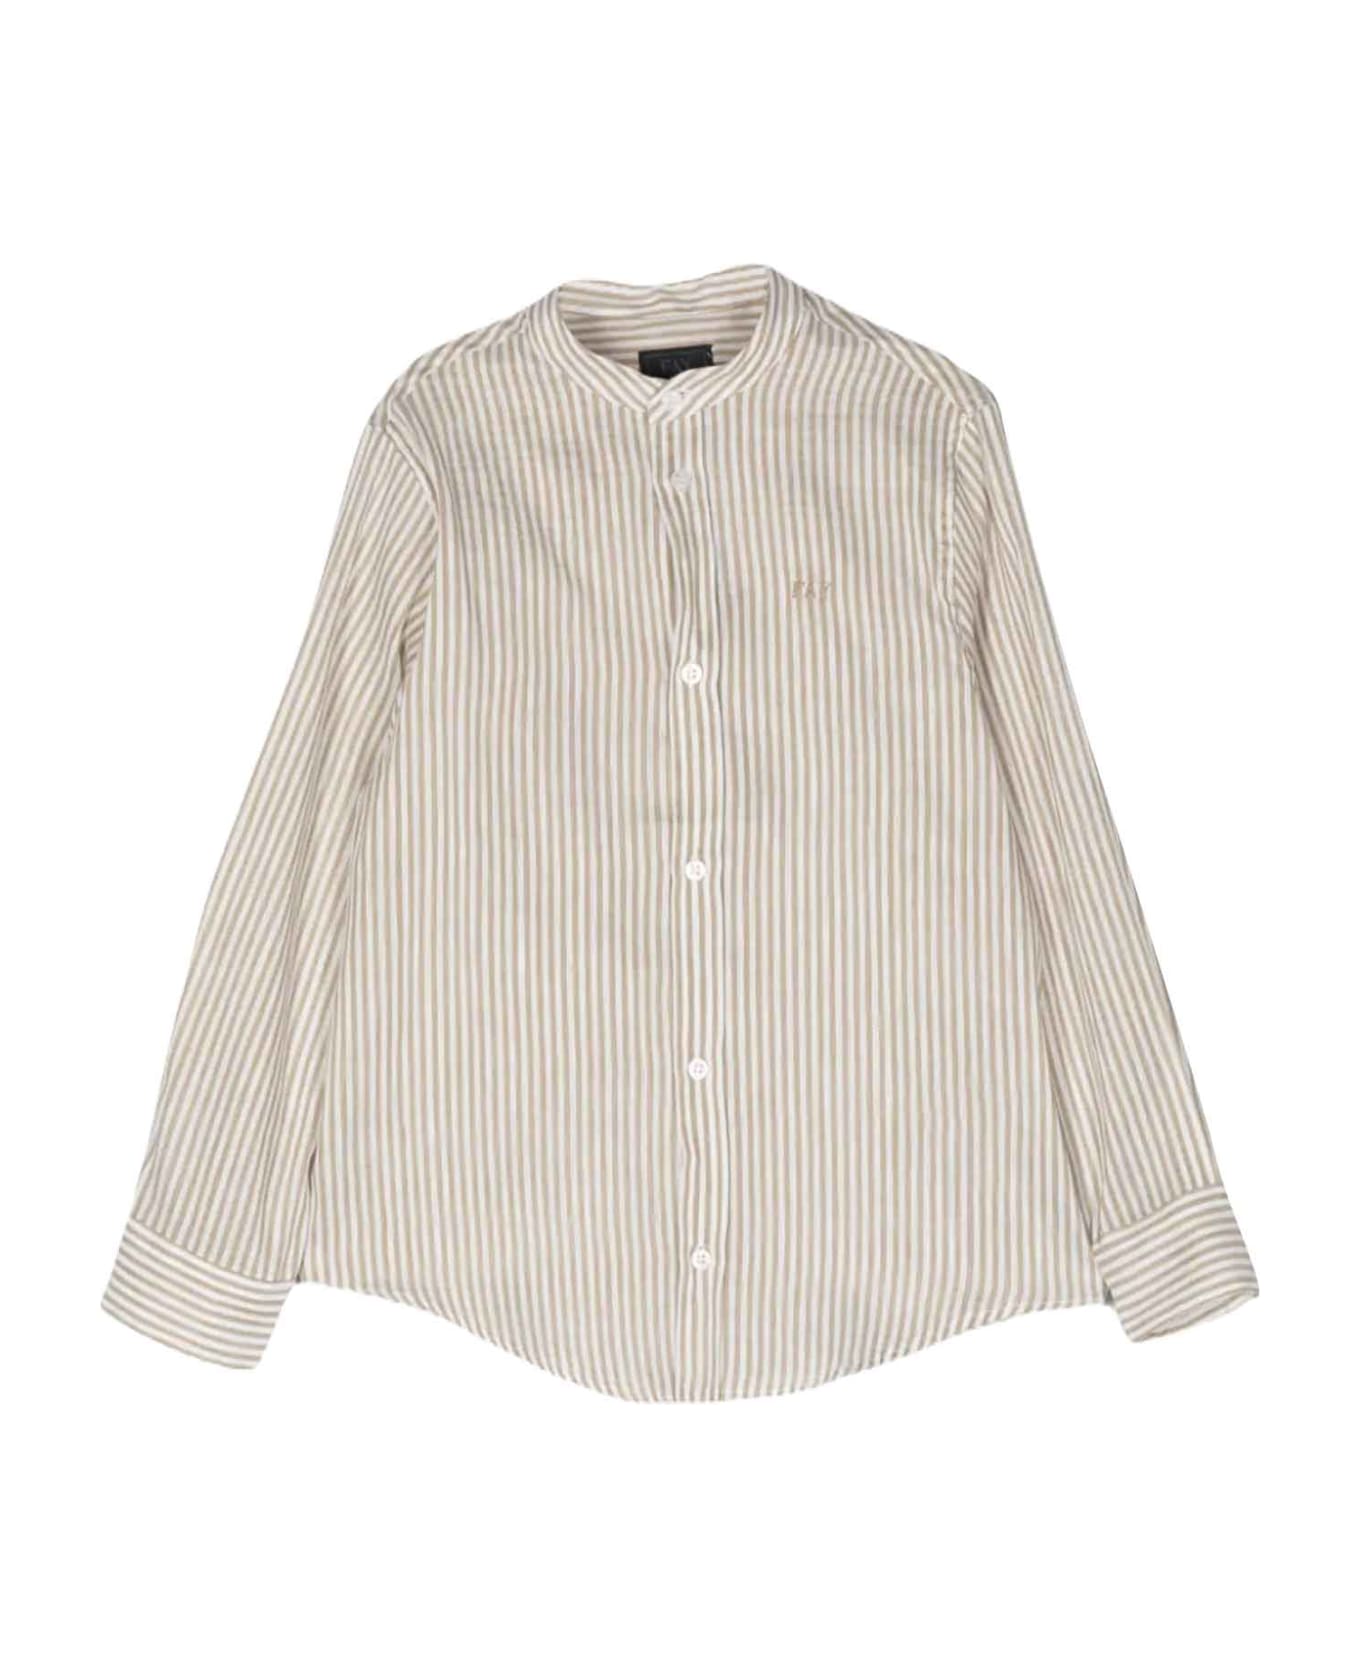 Fay Sand Shirt Boy - Bianco